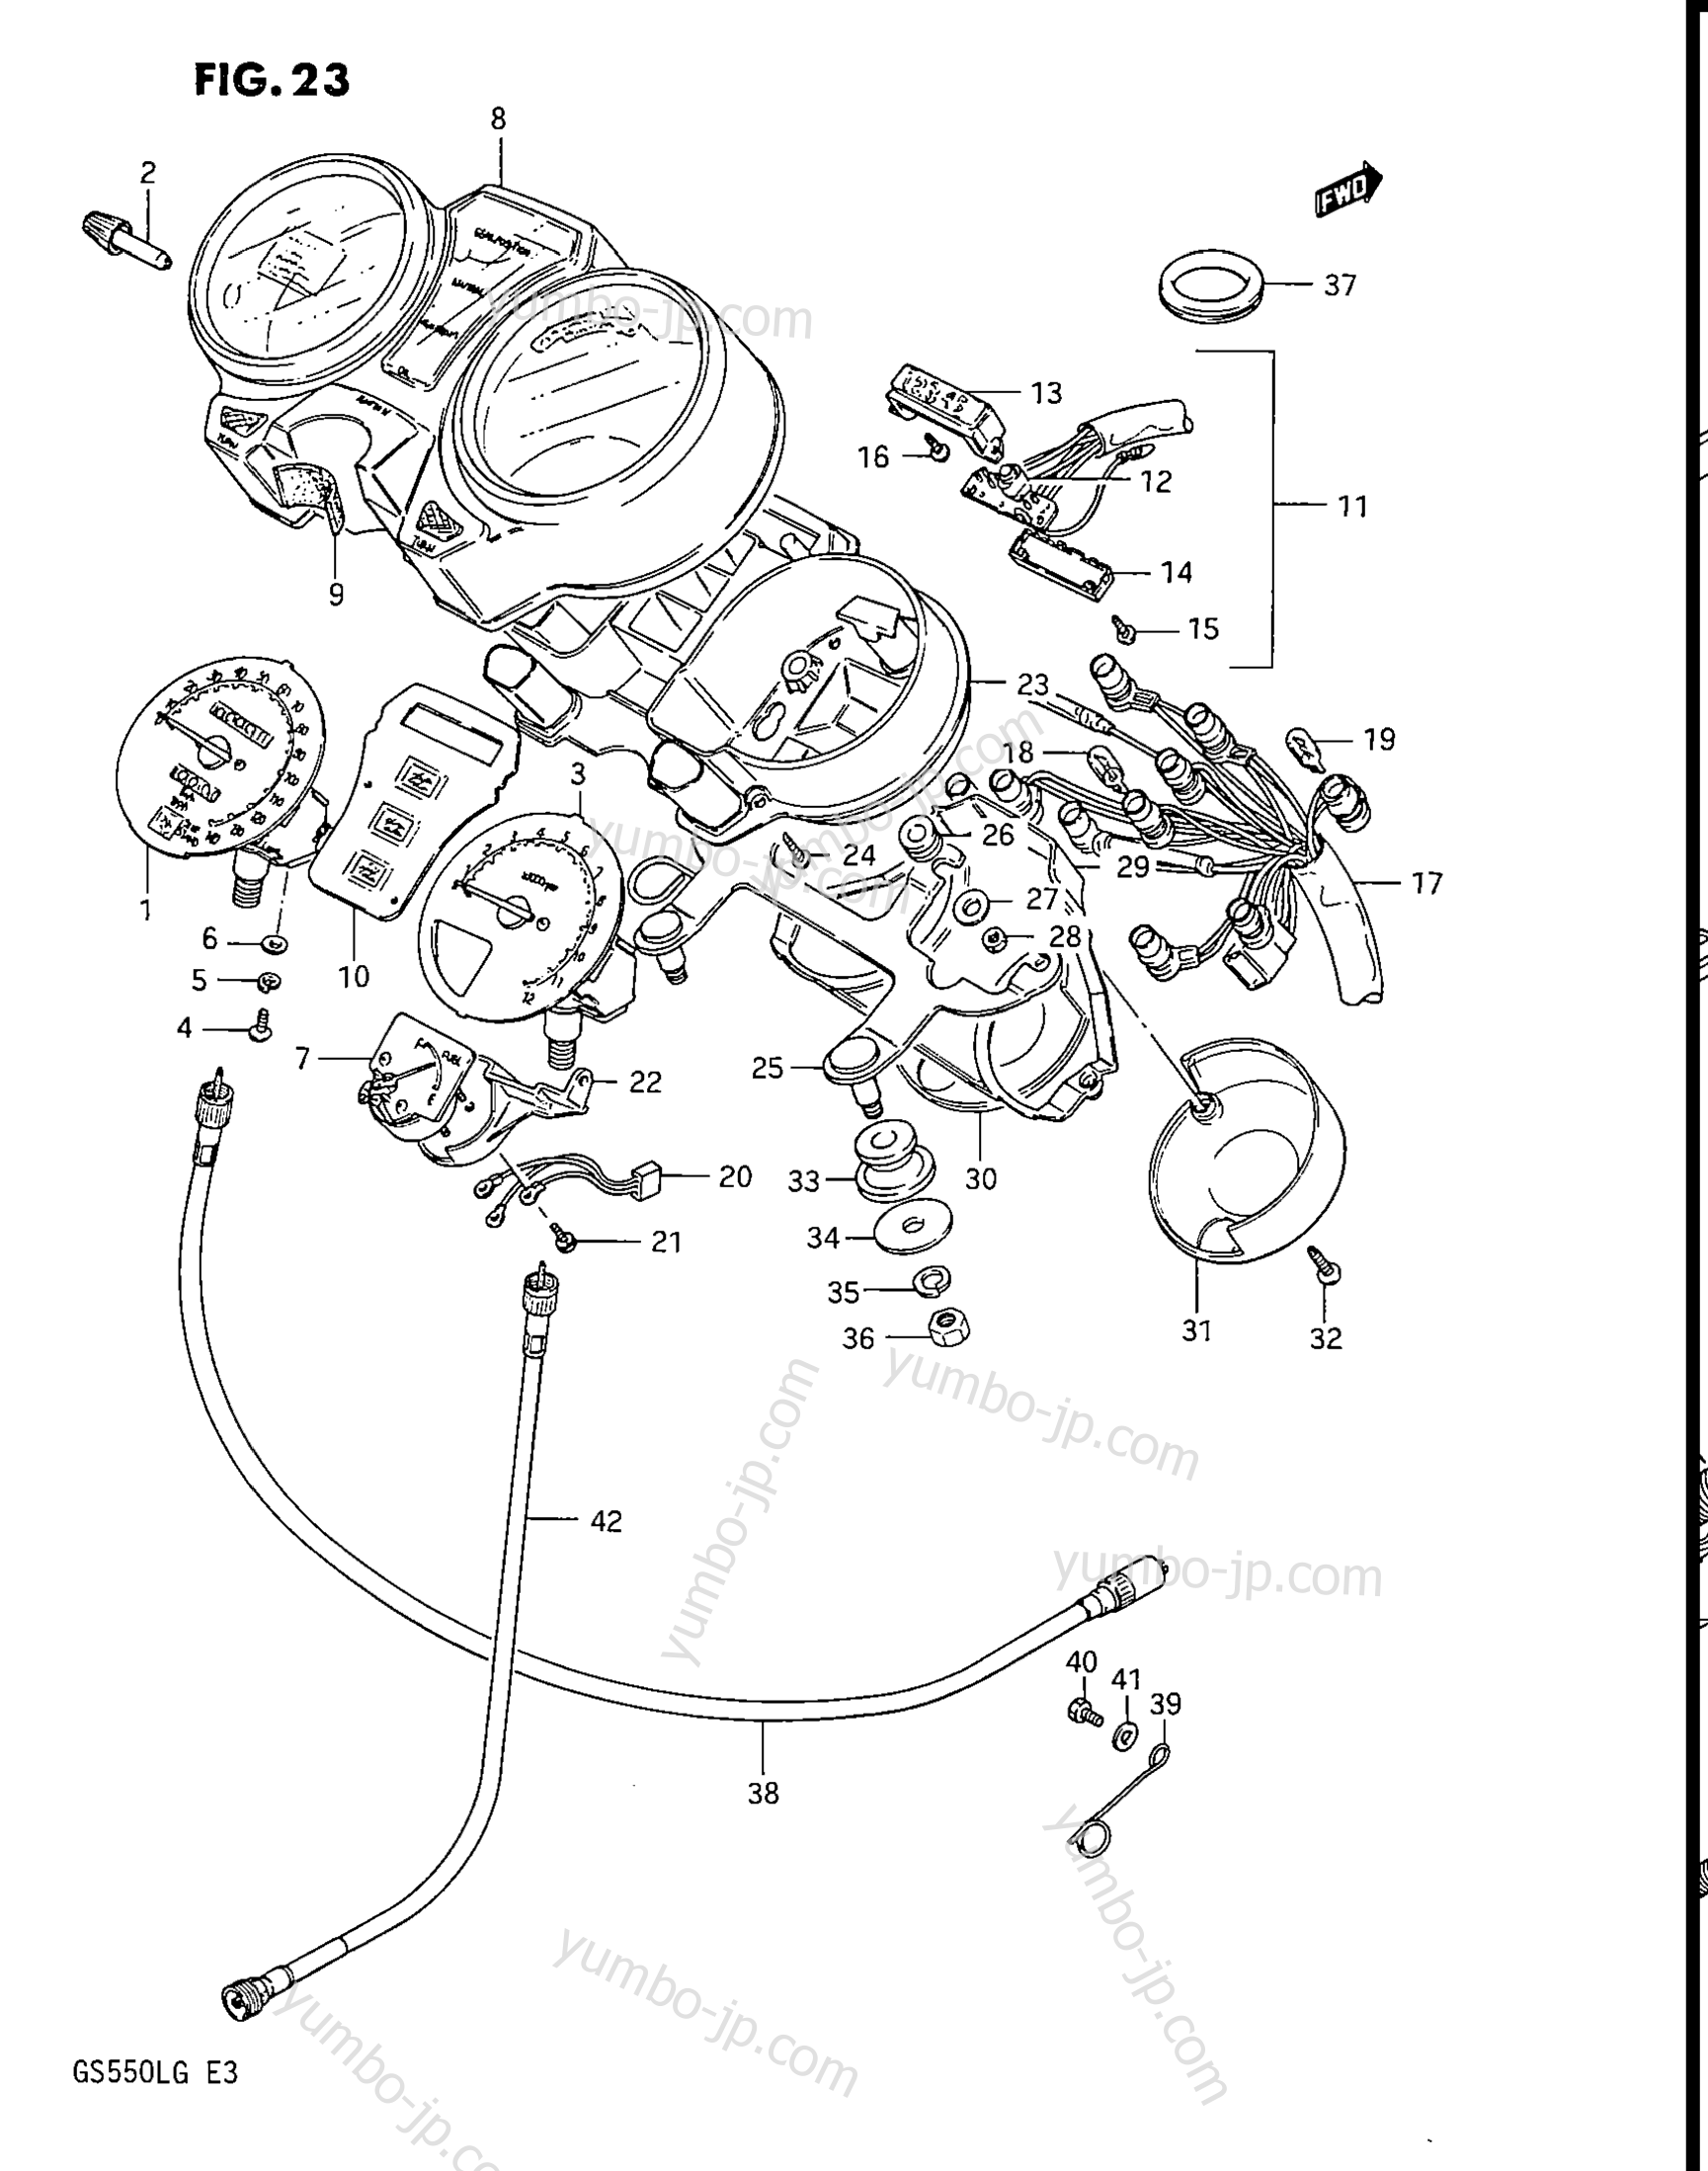 Speedometer - Tachometer for motorcycles SUZUKI GS550L 1985 year